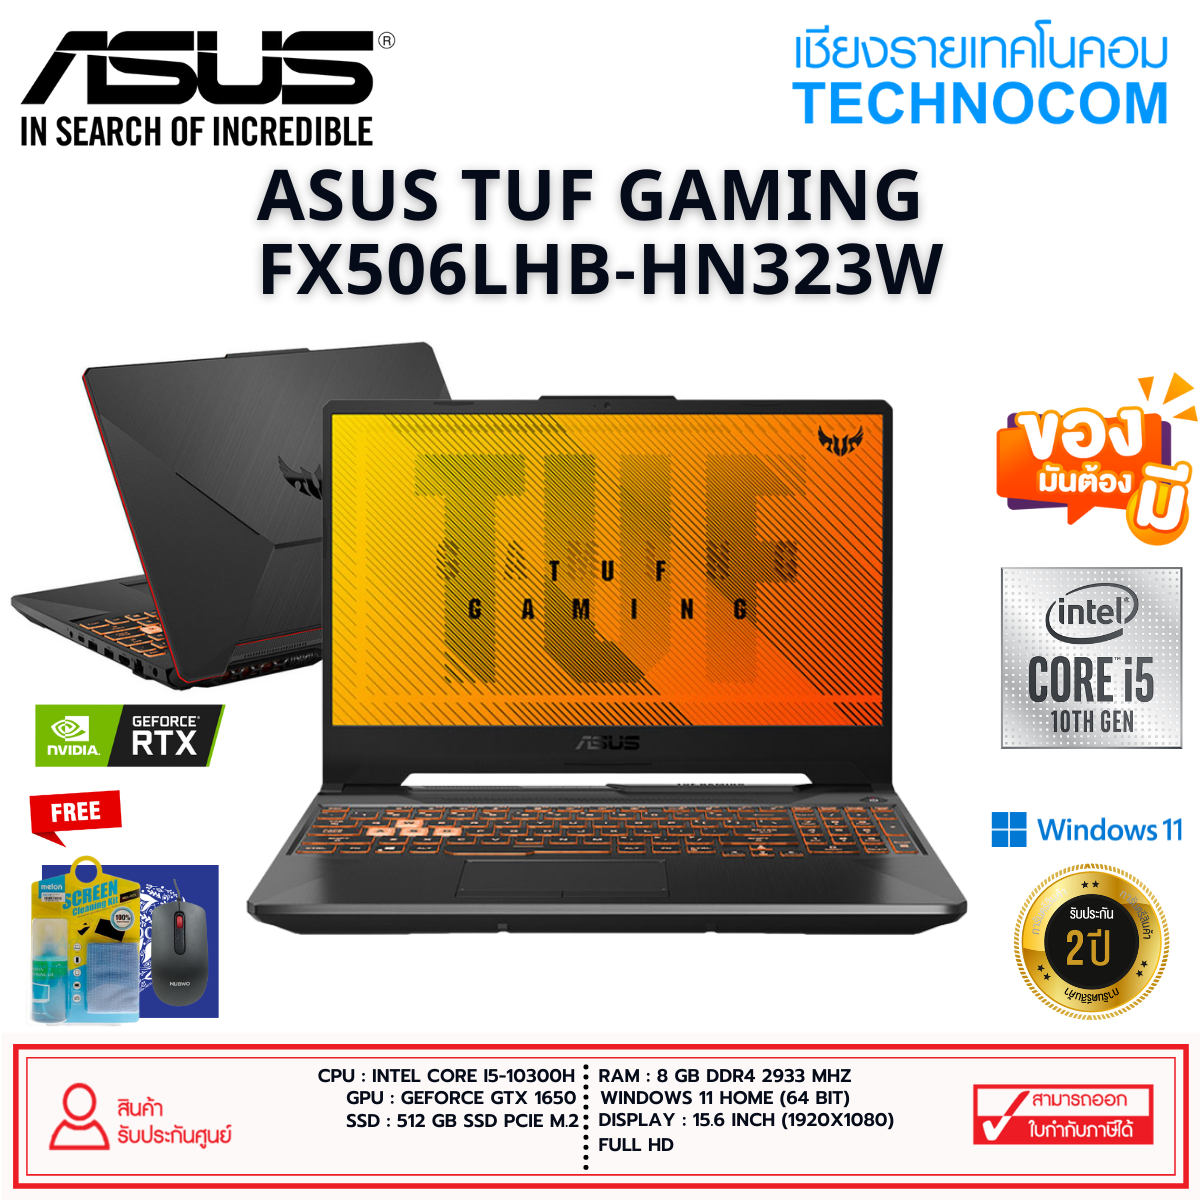 ASUS FX506LHB-HN323W Ci5-10300H/8GB/512GB/15.6''FHD/GTX1650/WIN 11 HOME